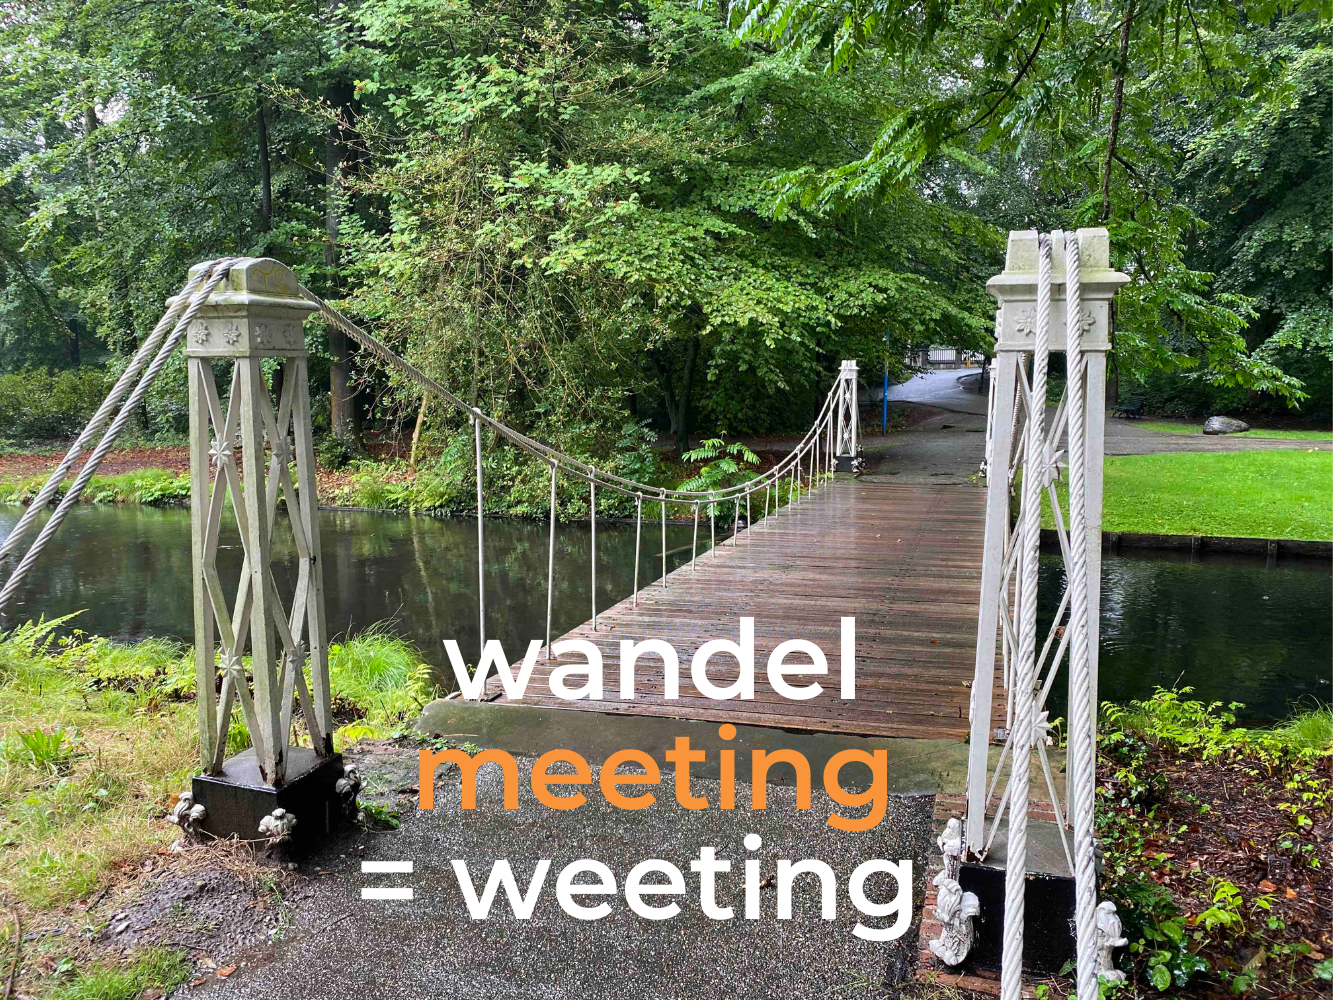 WANDEL MEETING = WEETING